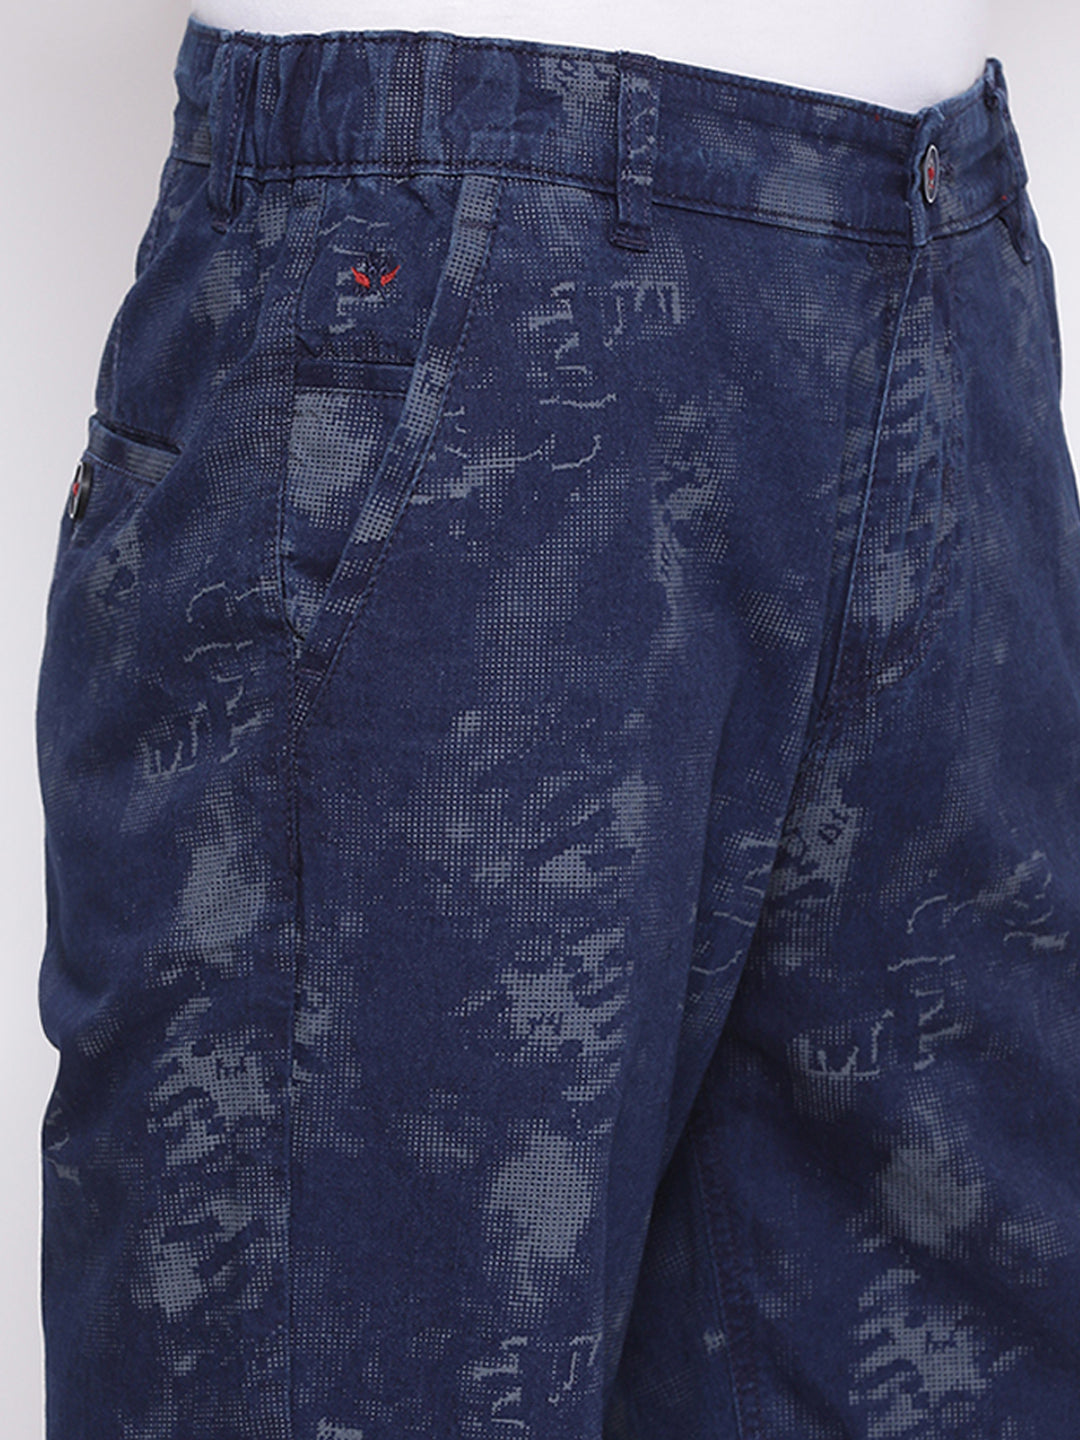 Navy Blue Printed shorts - Men Shorts